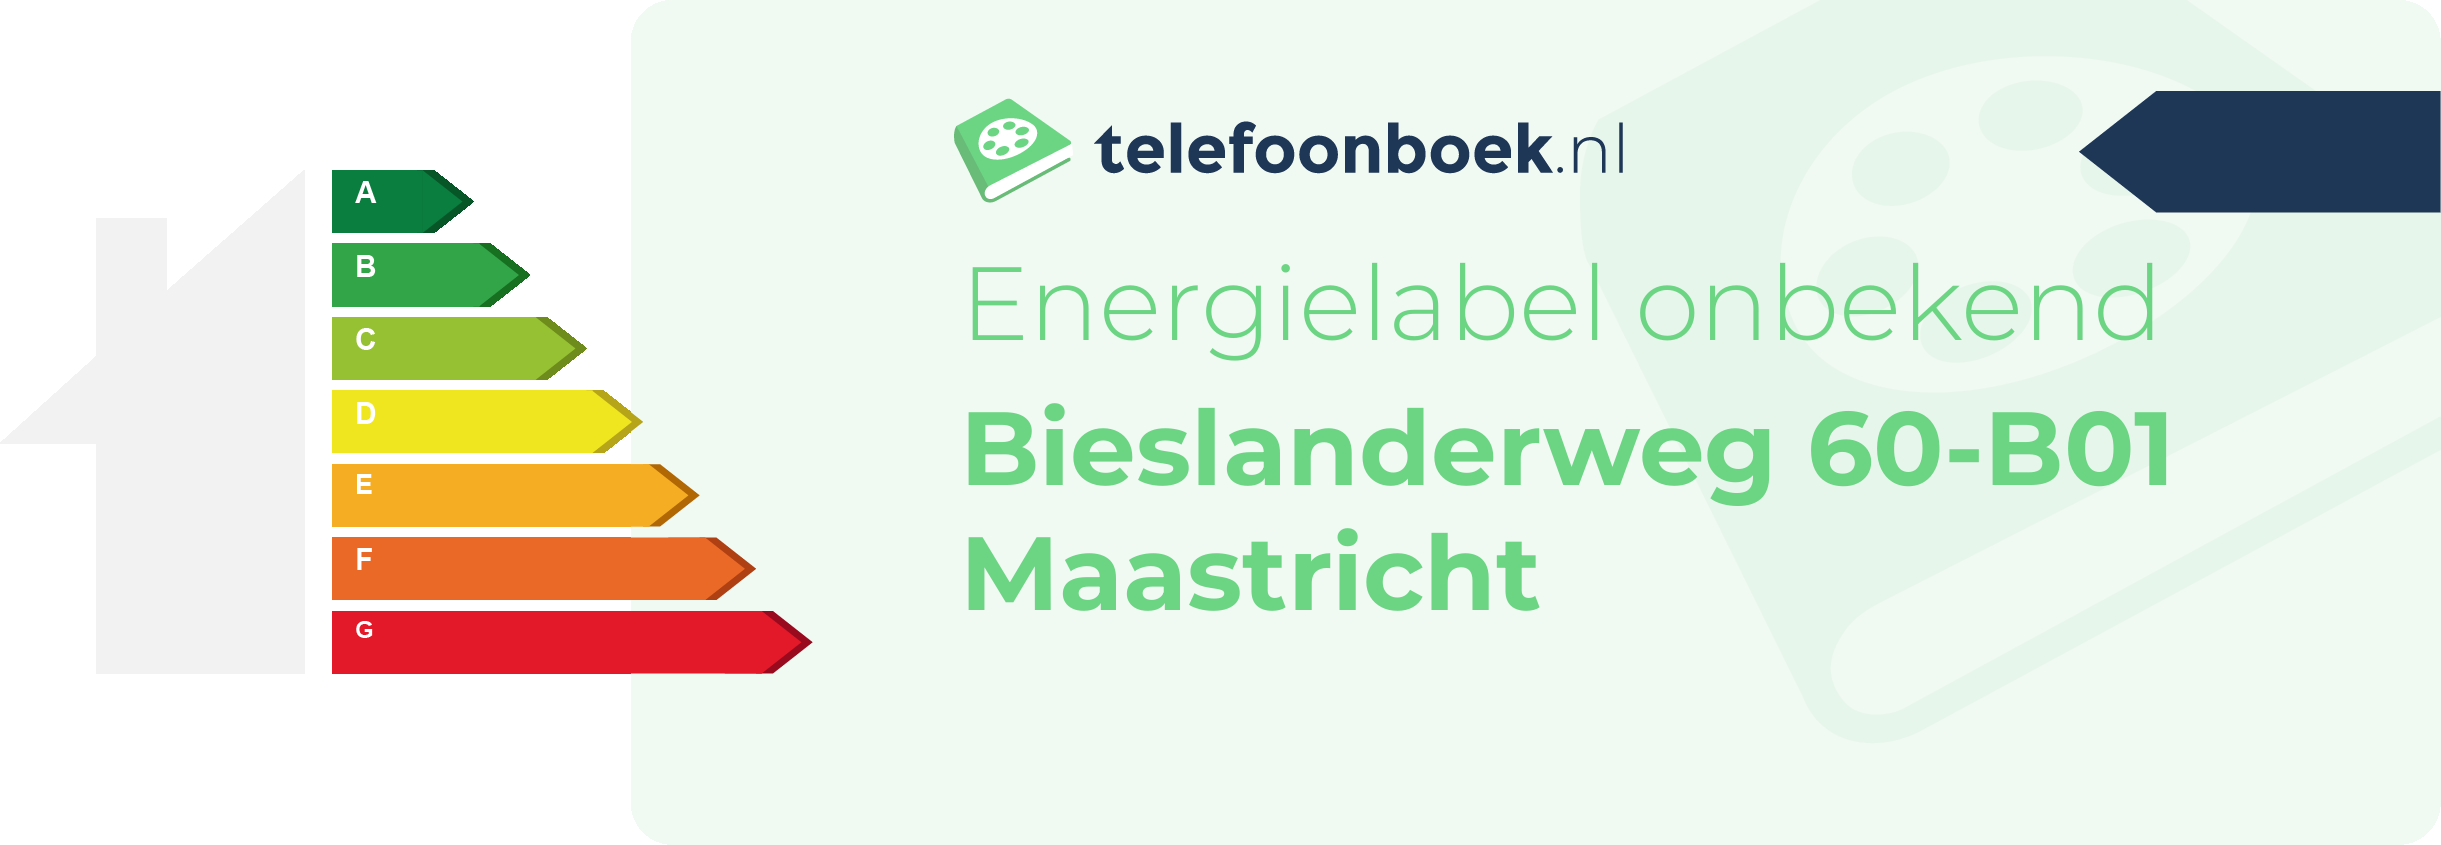 Energielabel Bieslanderweg 60-B01 Maastricht